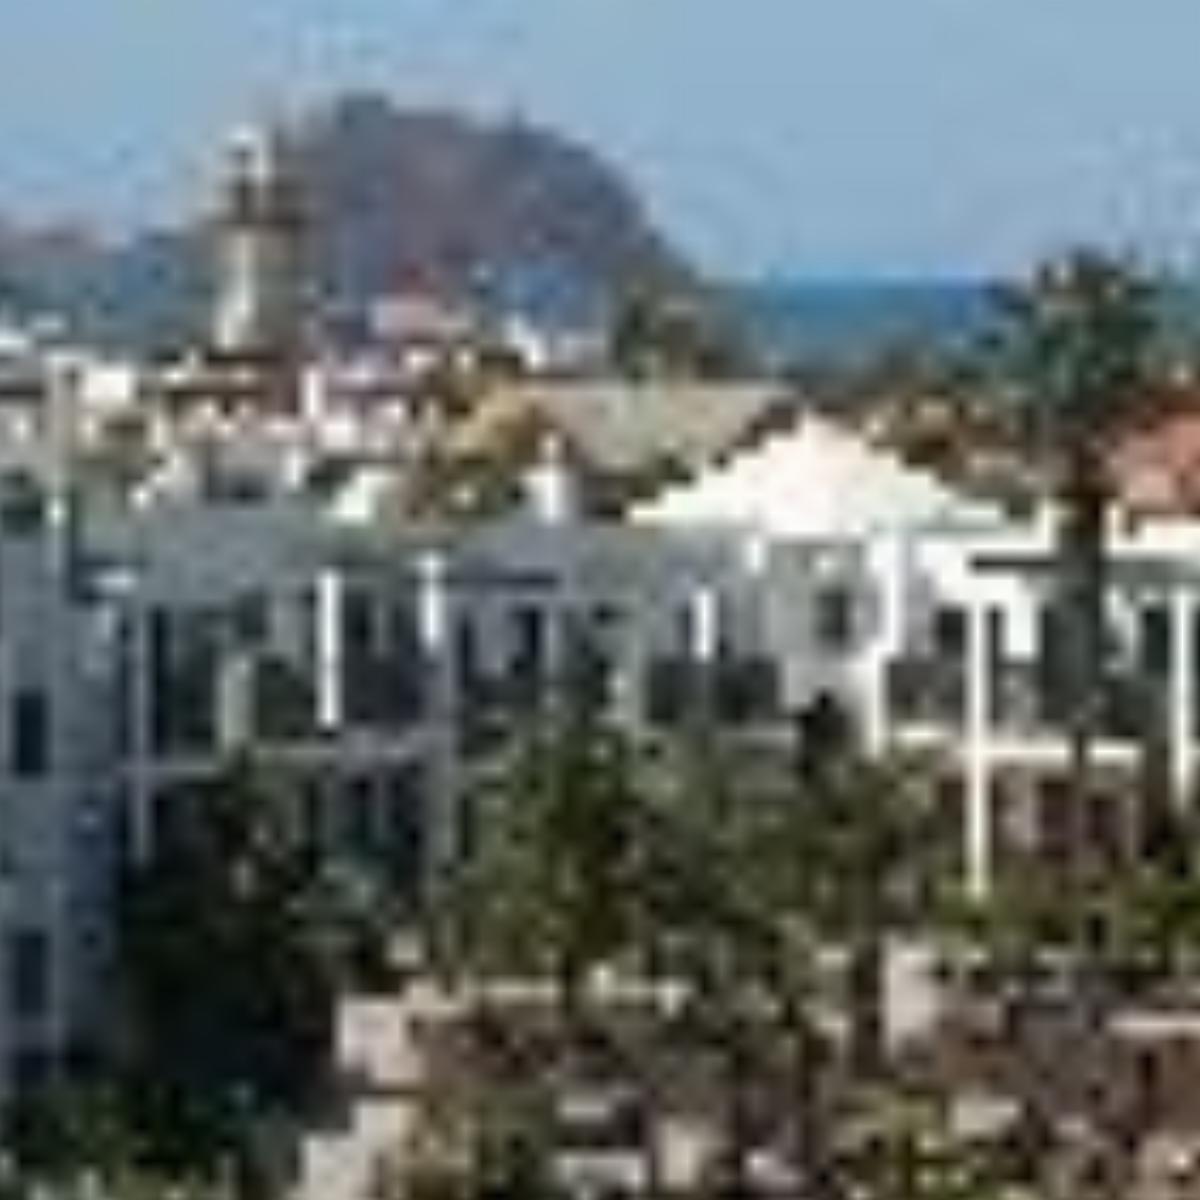 Las Marismas De Corralejo Hotel Fuerteventura Spain